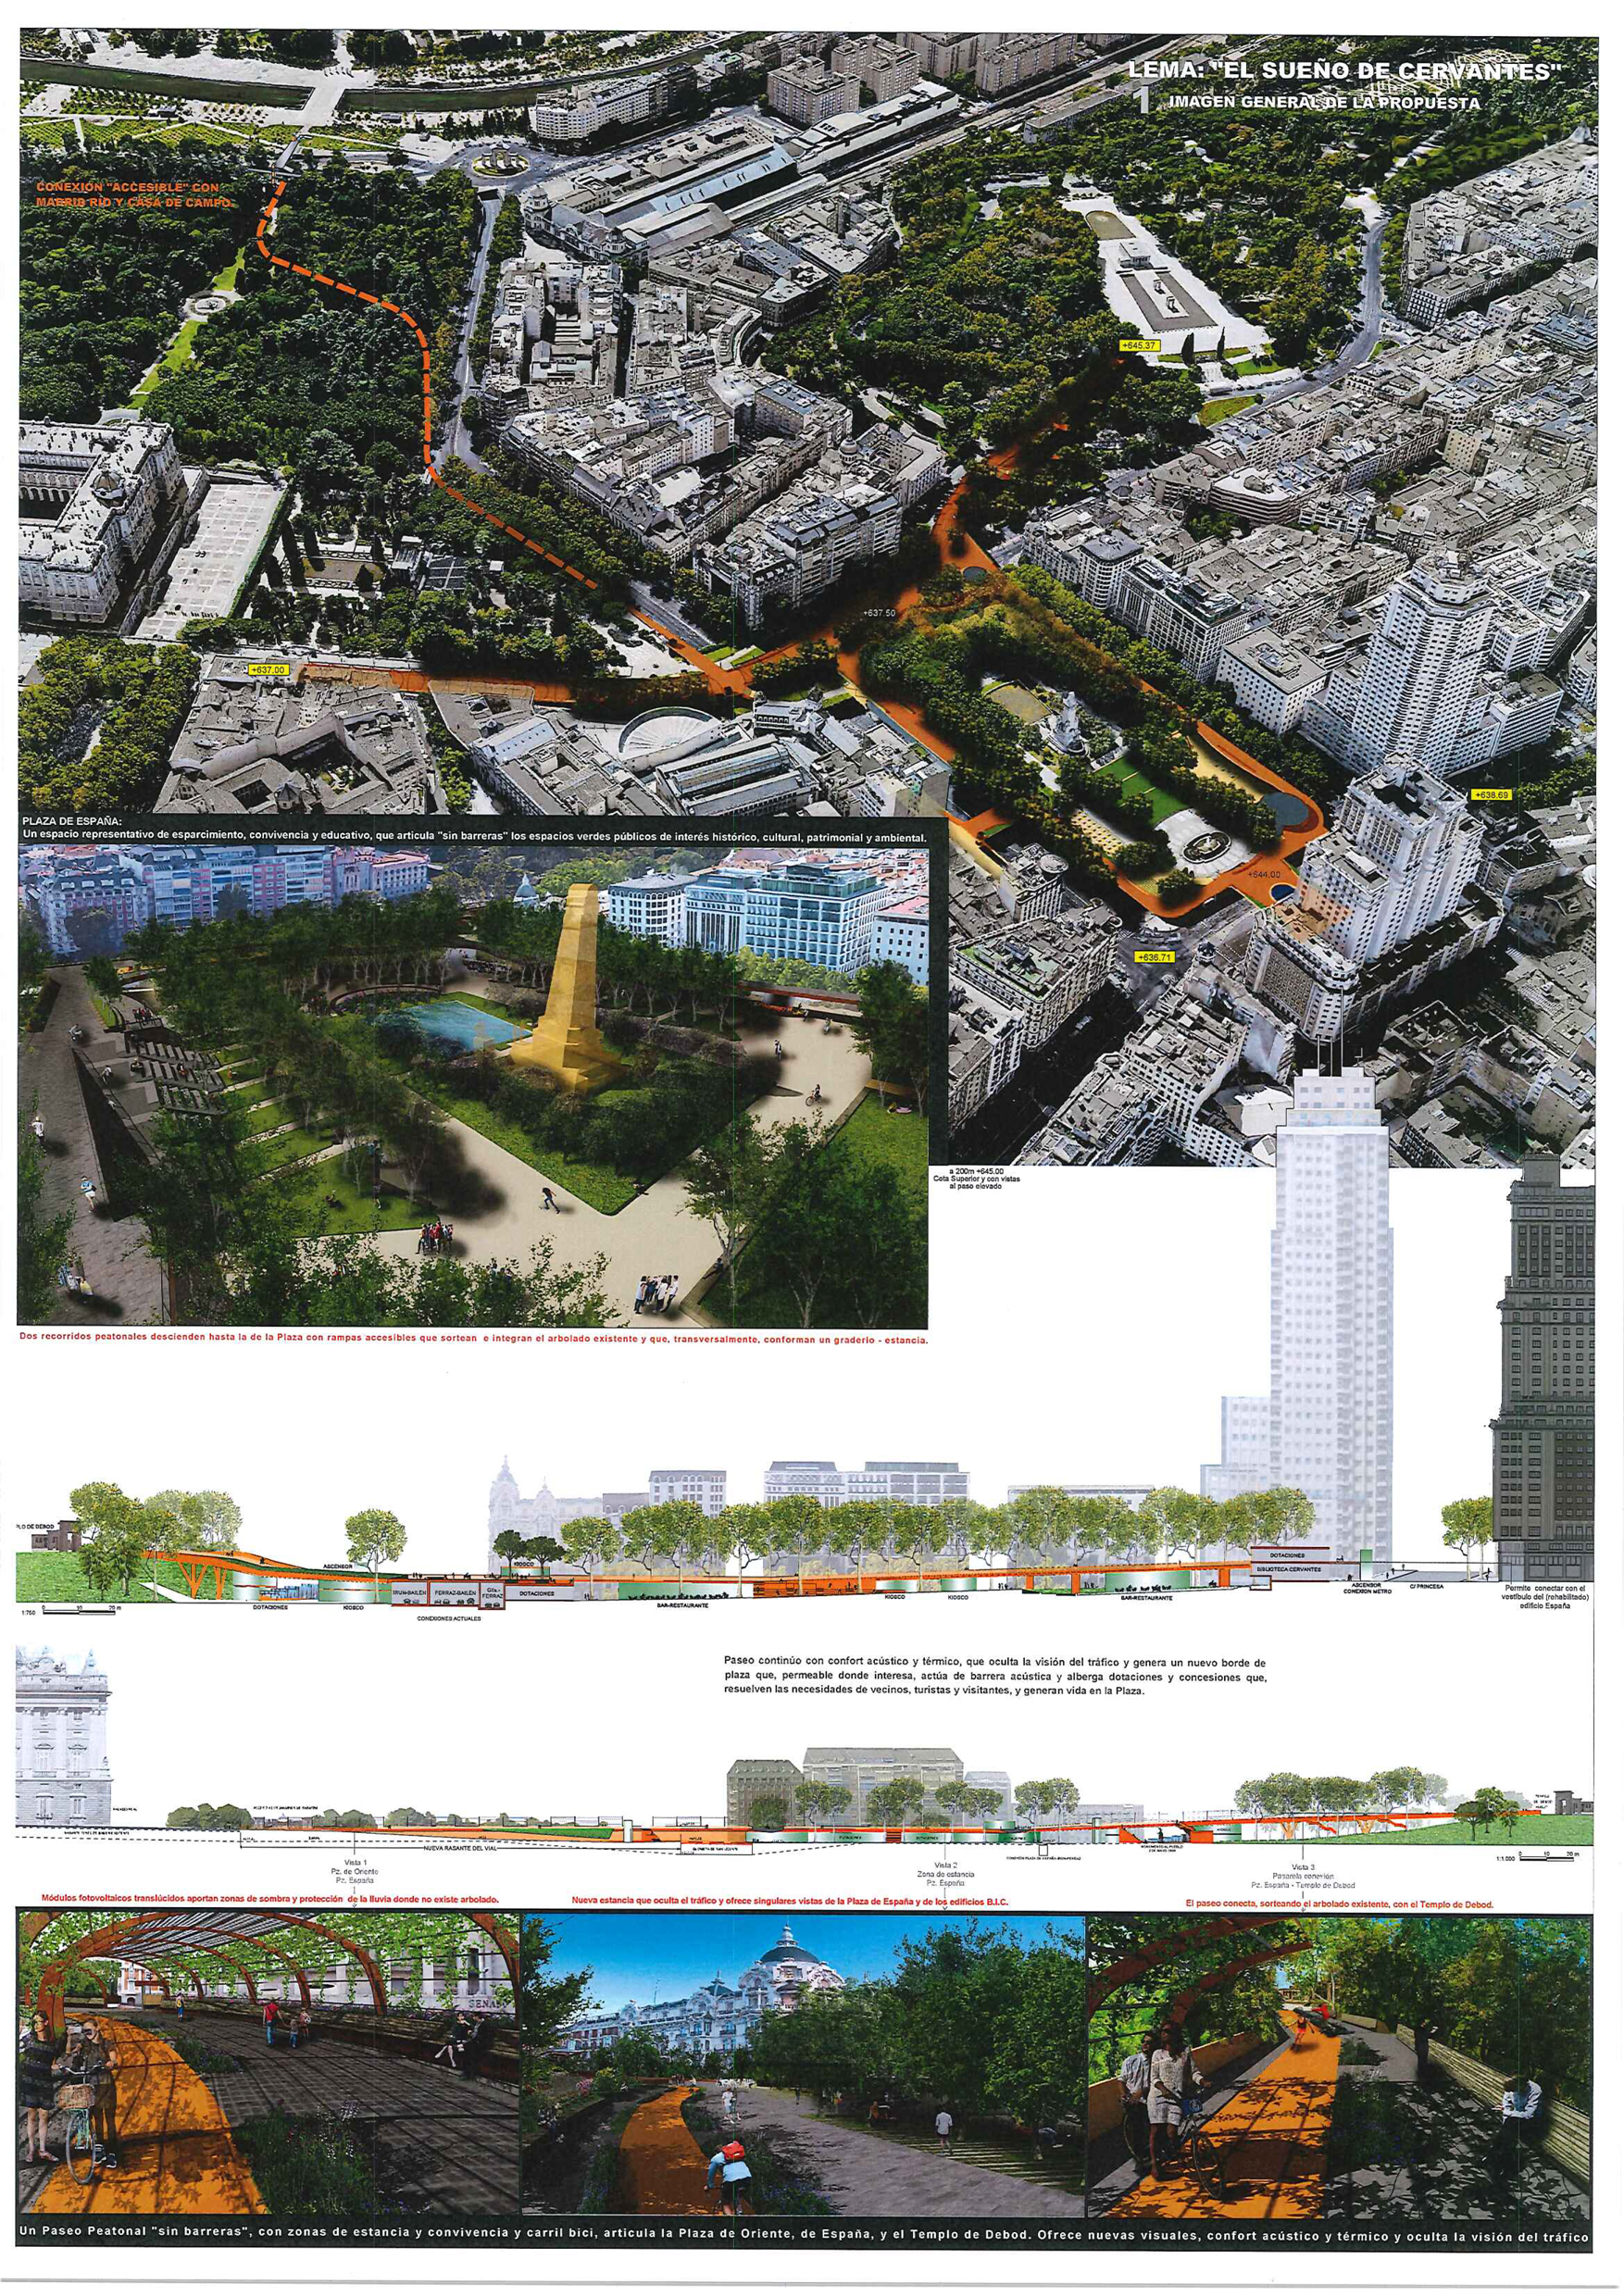 Proyecto 19 para la Remodelación de Plaza España: El sueño de Cervantes